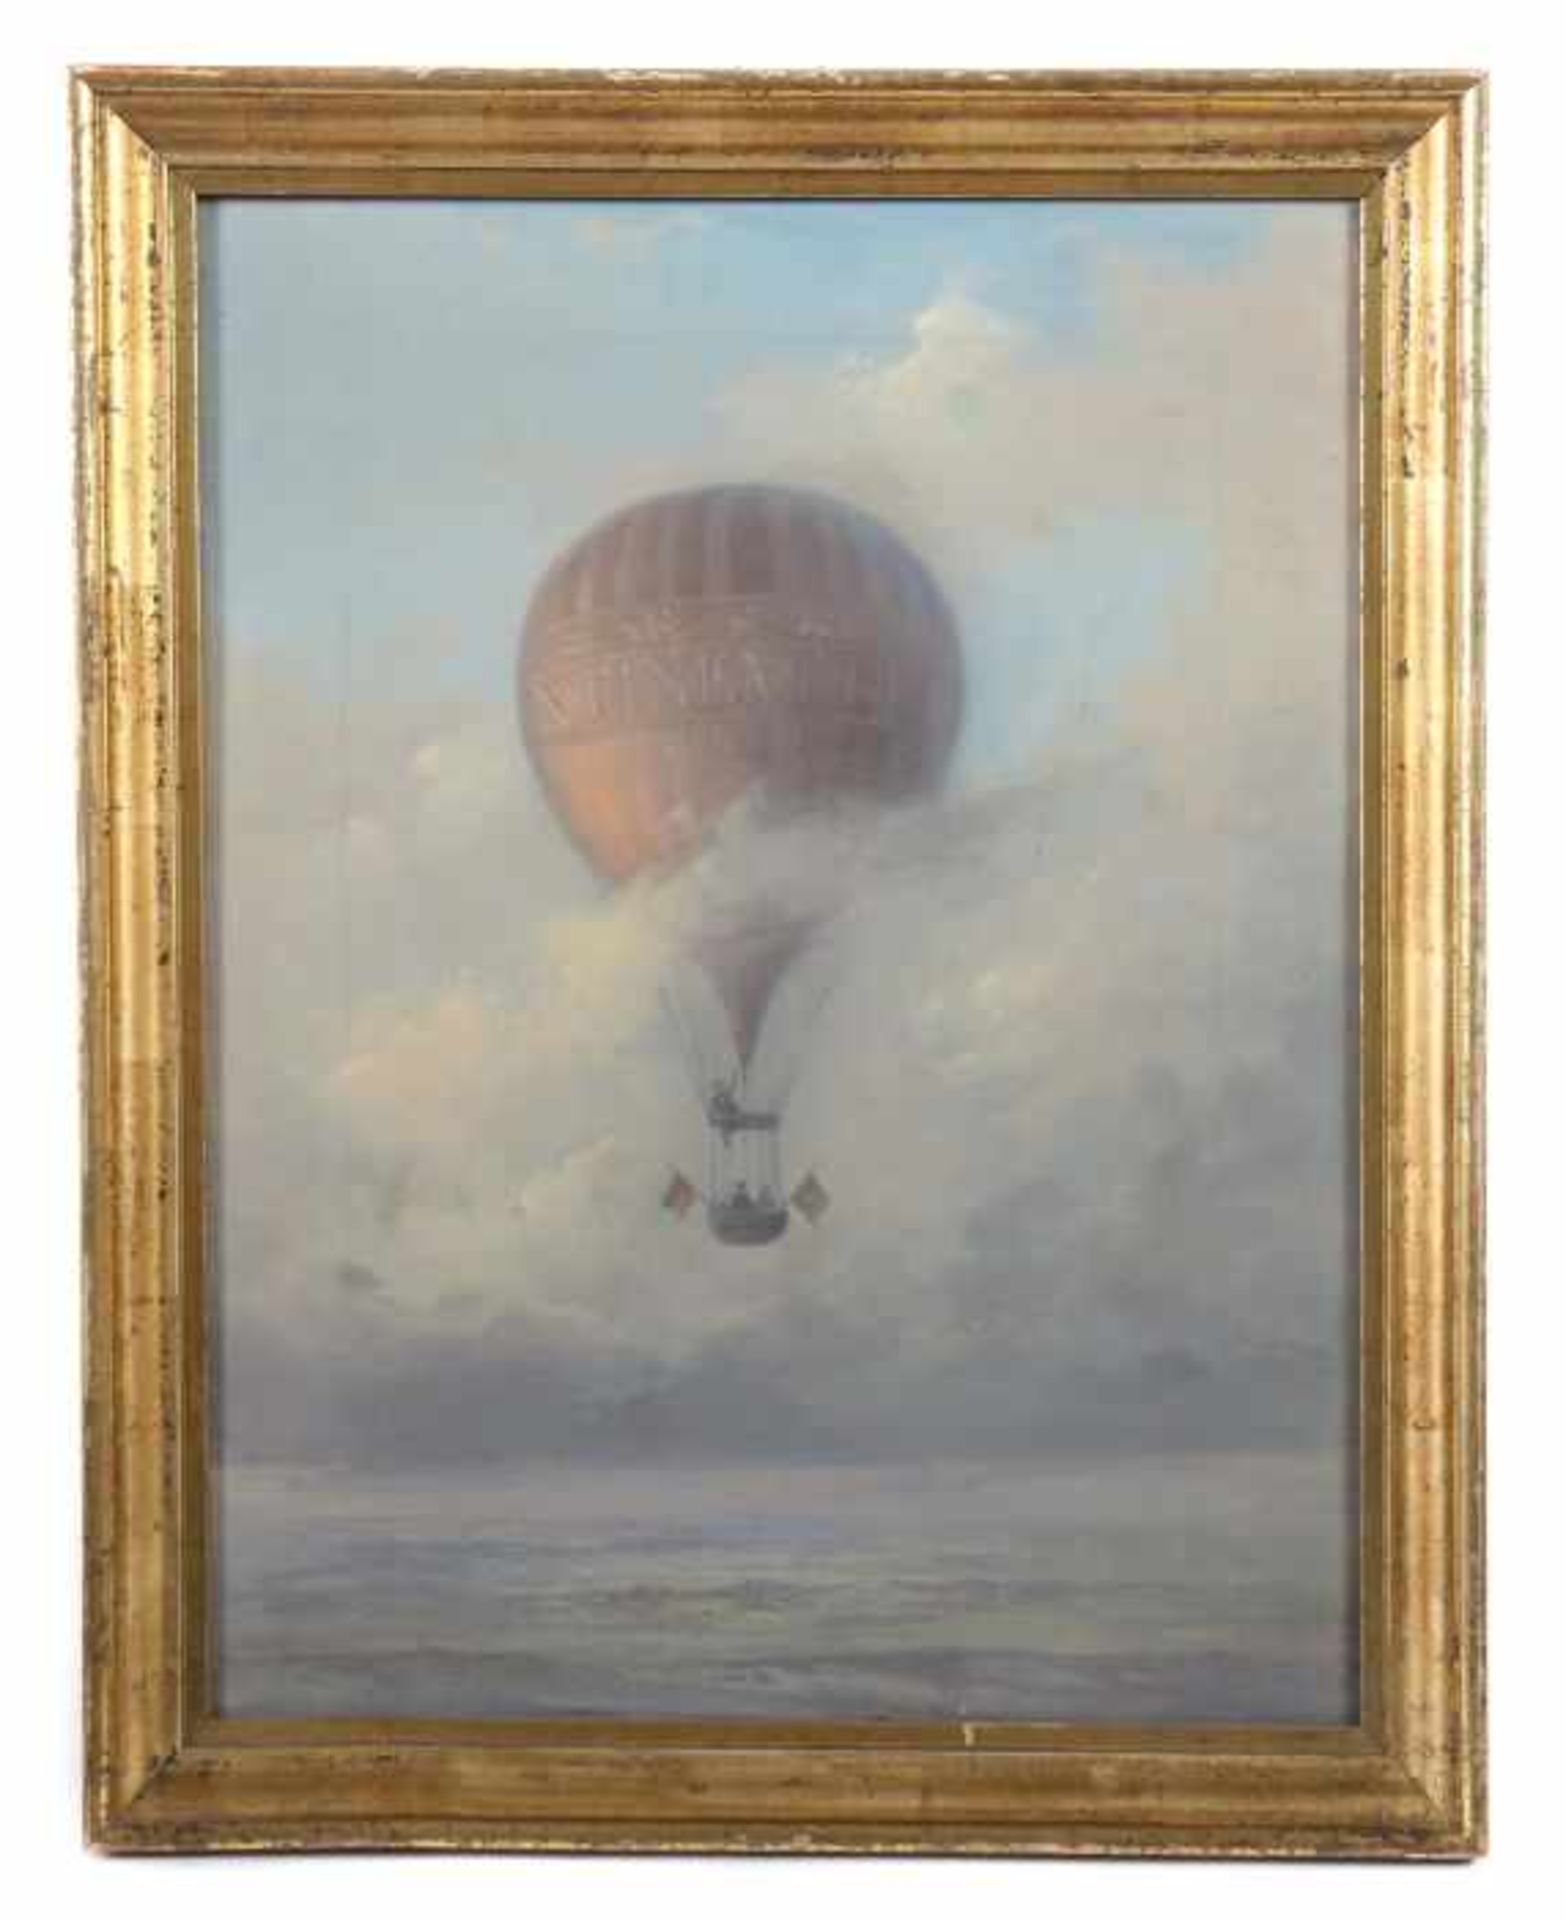 Maler des 19./20. Jh. "Ballonfahrt", drei Männer in einem Fesselballon, über einer Landschaft mit - Bild 2 aus 3